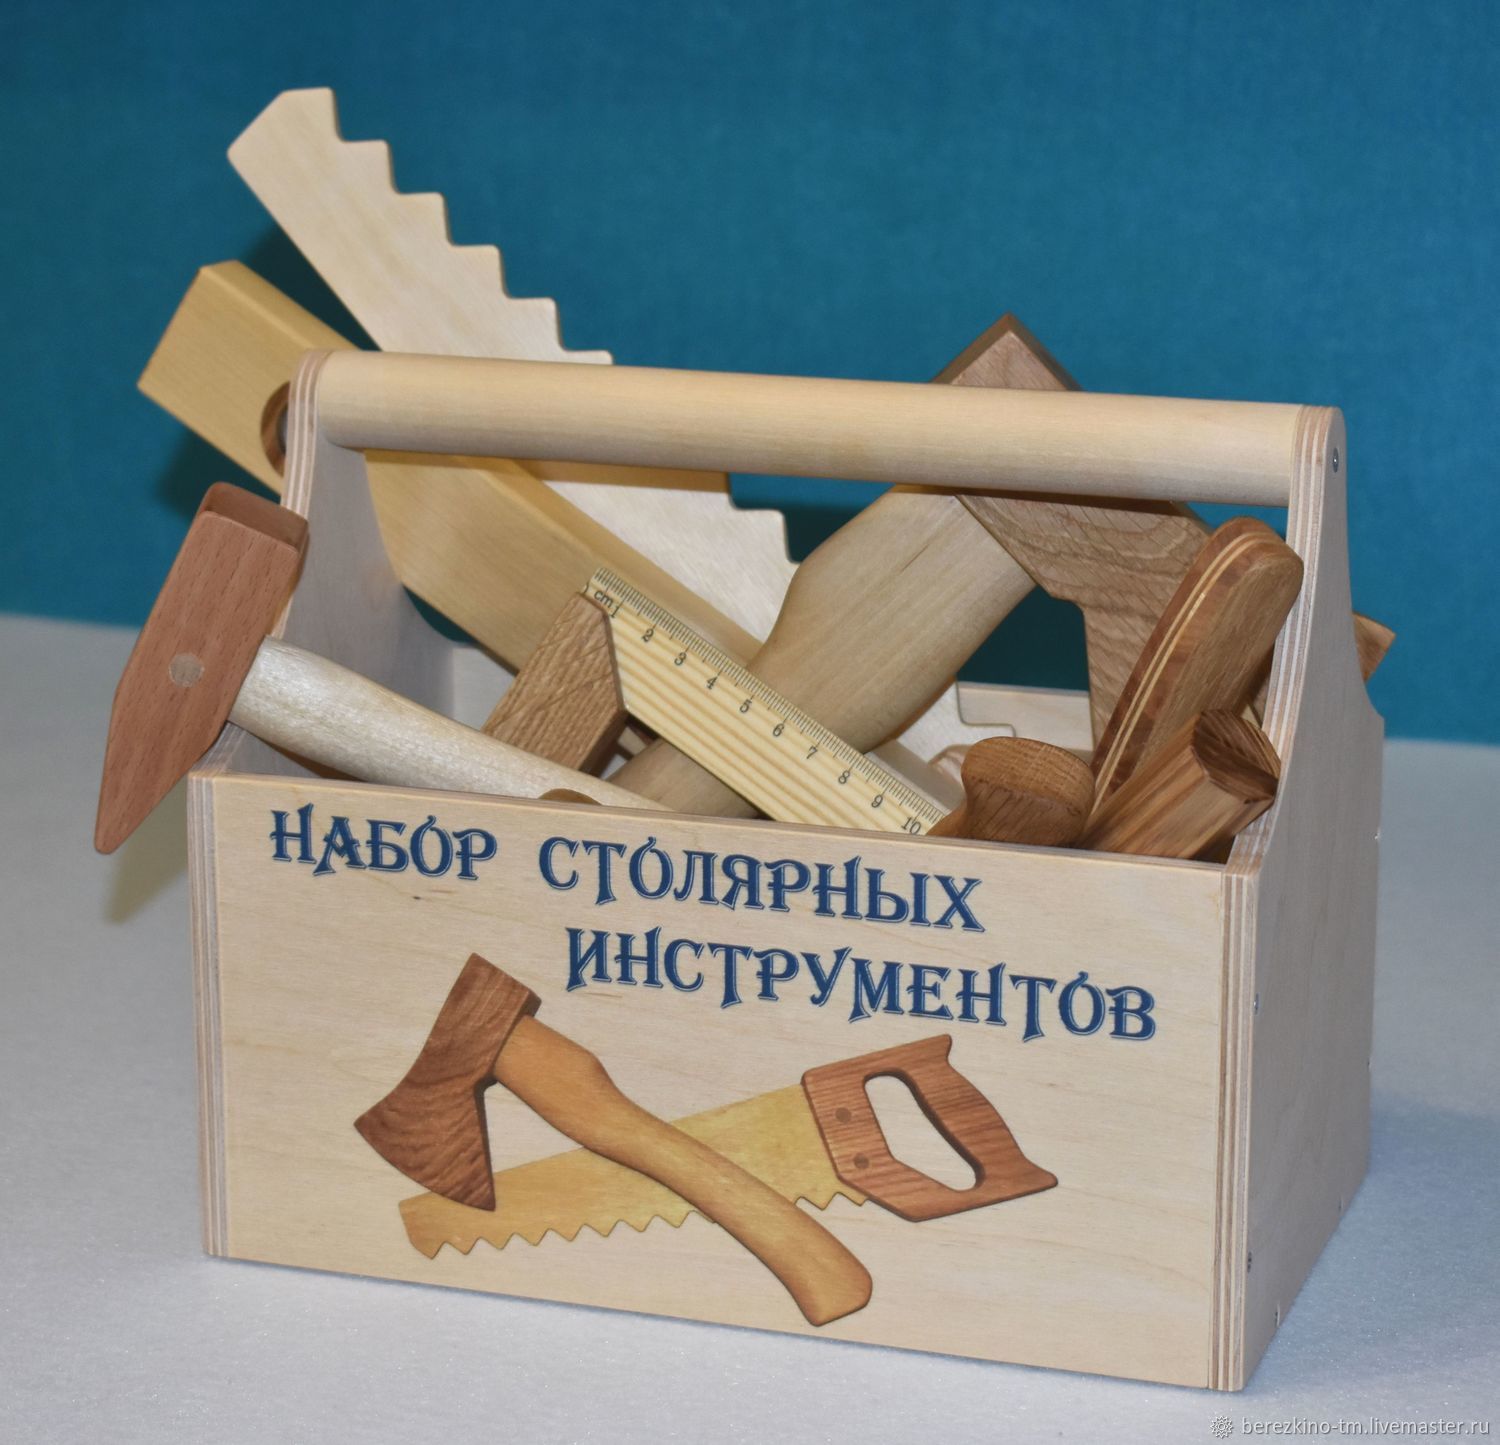  столярных инструментов из дерева – заказать на Ярмарке Мастеров .